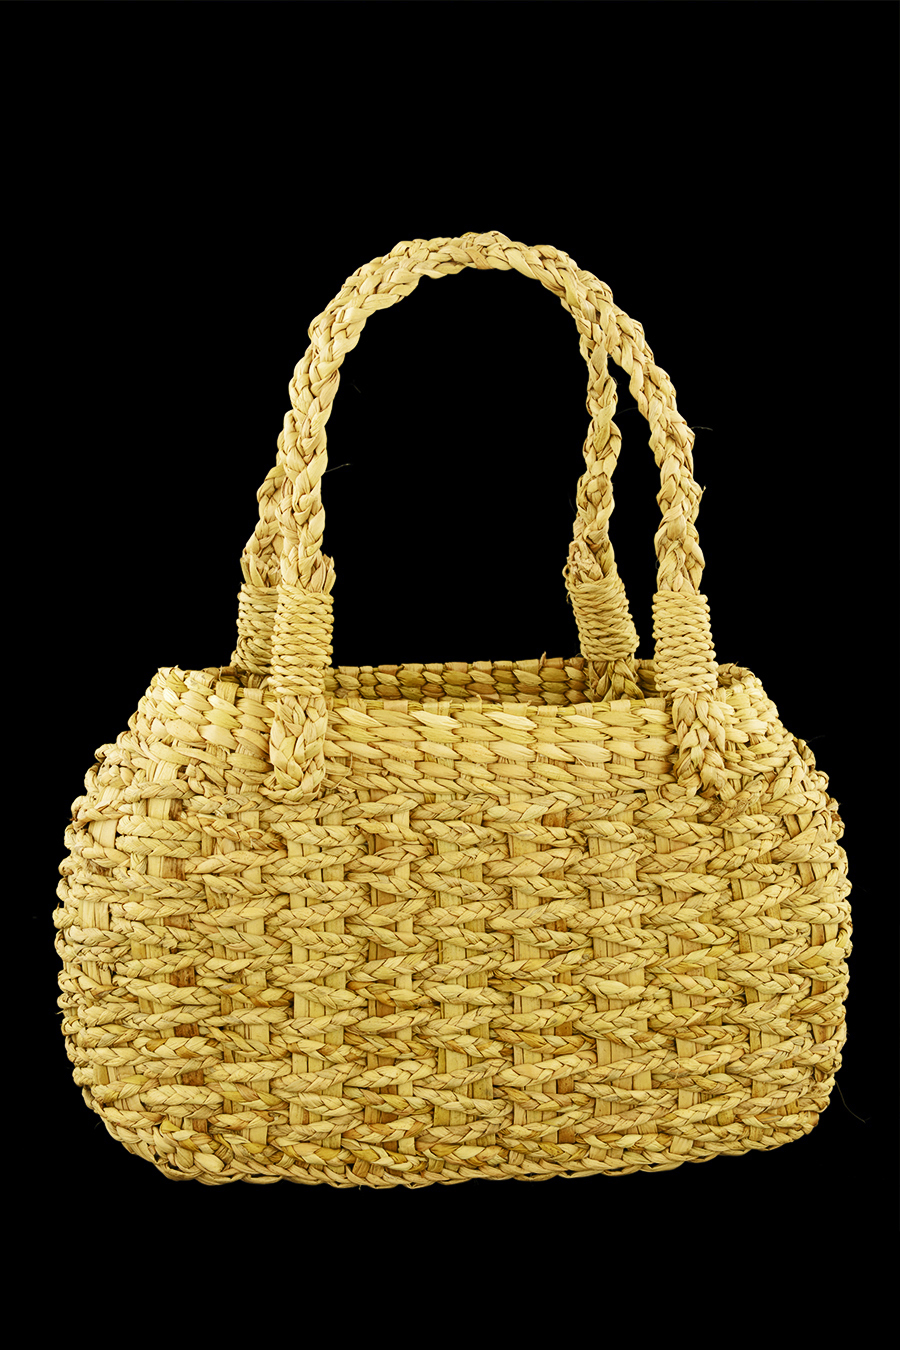 Water Reed Handbag - Small Size